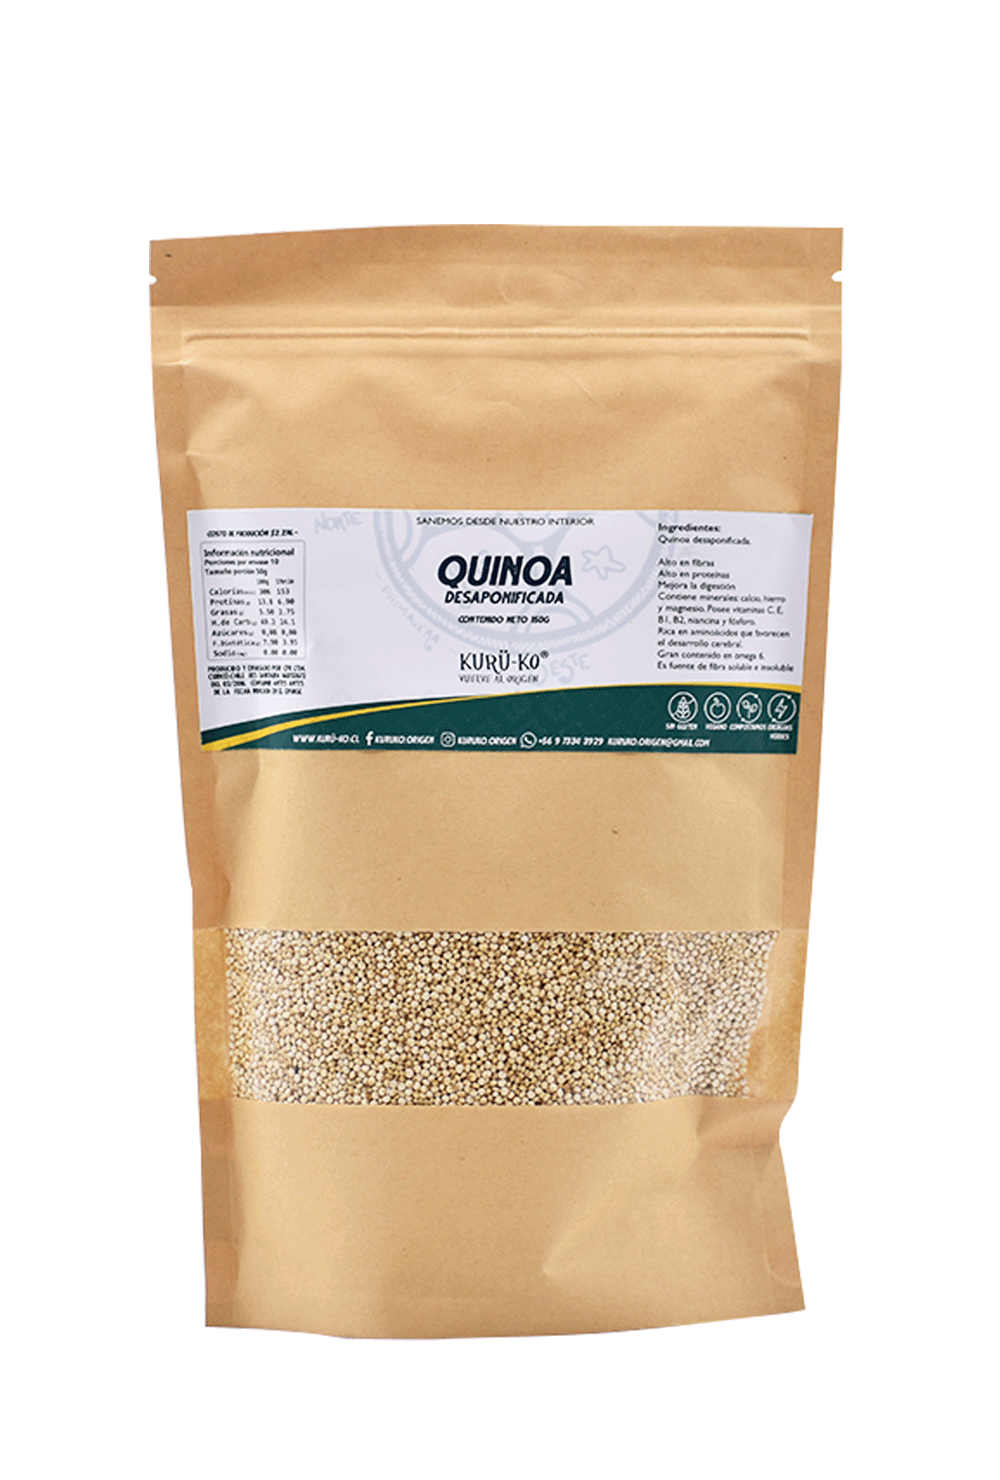 Quinoa desaponificada 500g